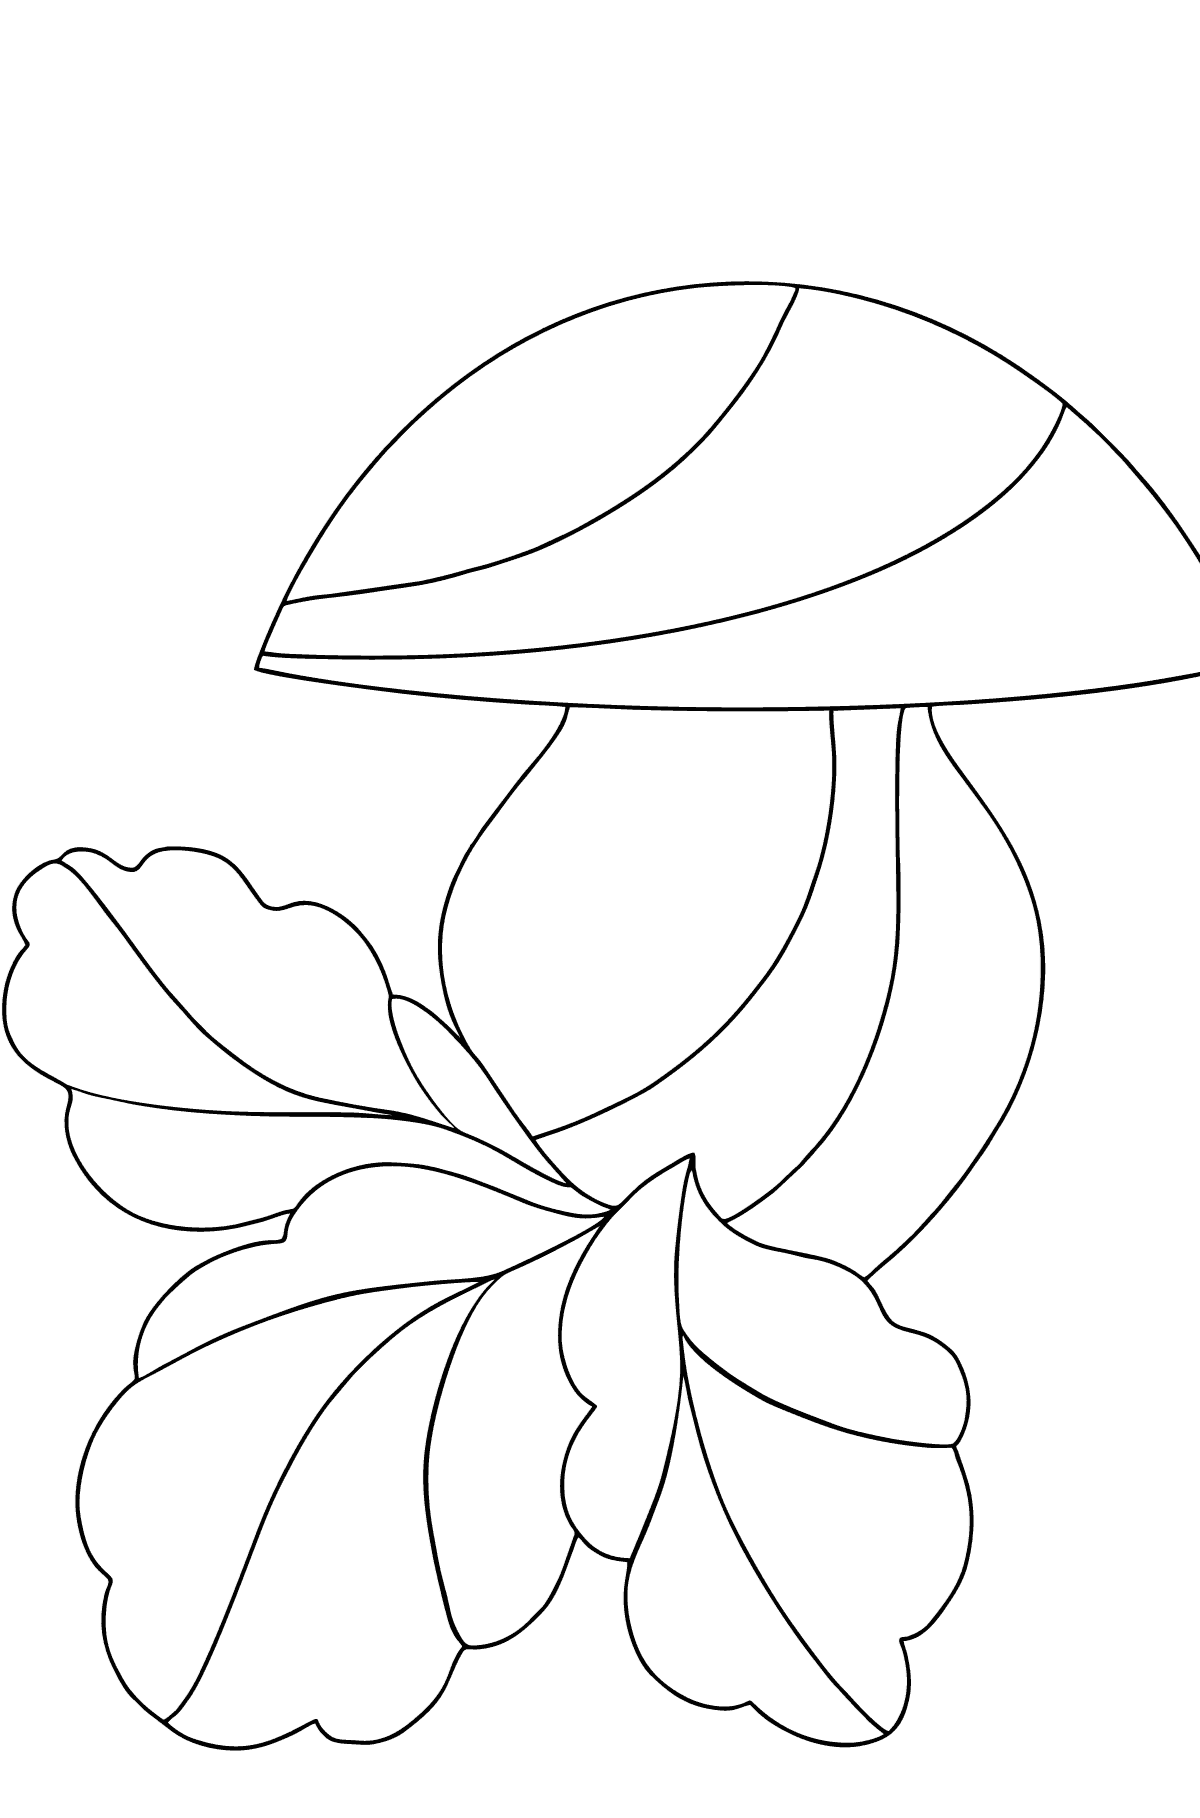 Tegning til farvning efterår og svampe (vanskeligt) - Tegninger til farvelægning for børn